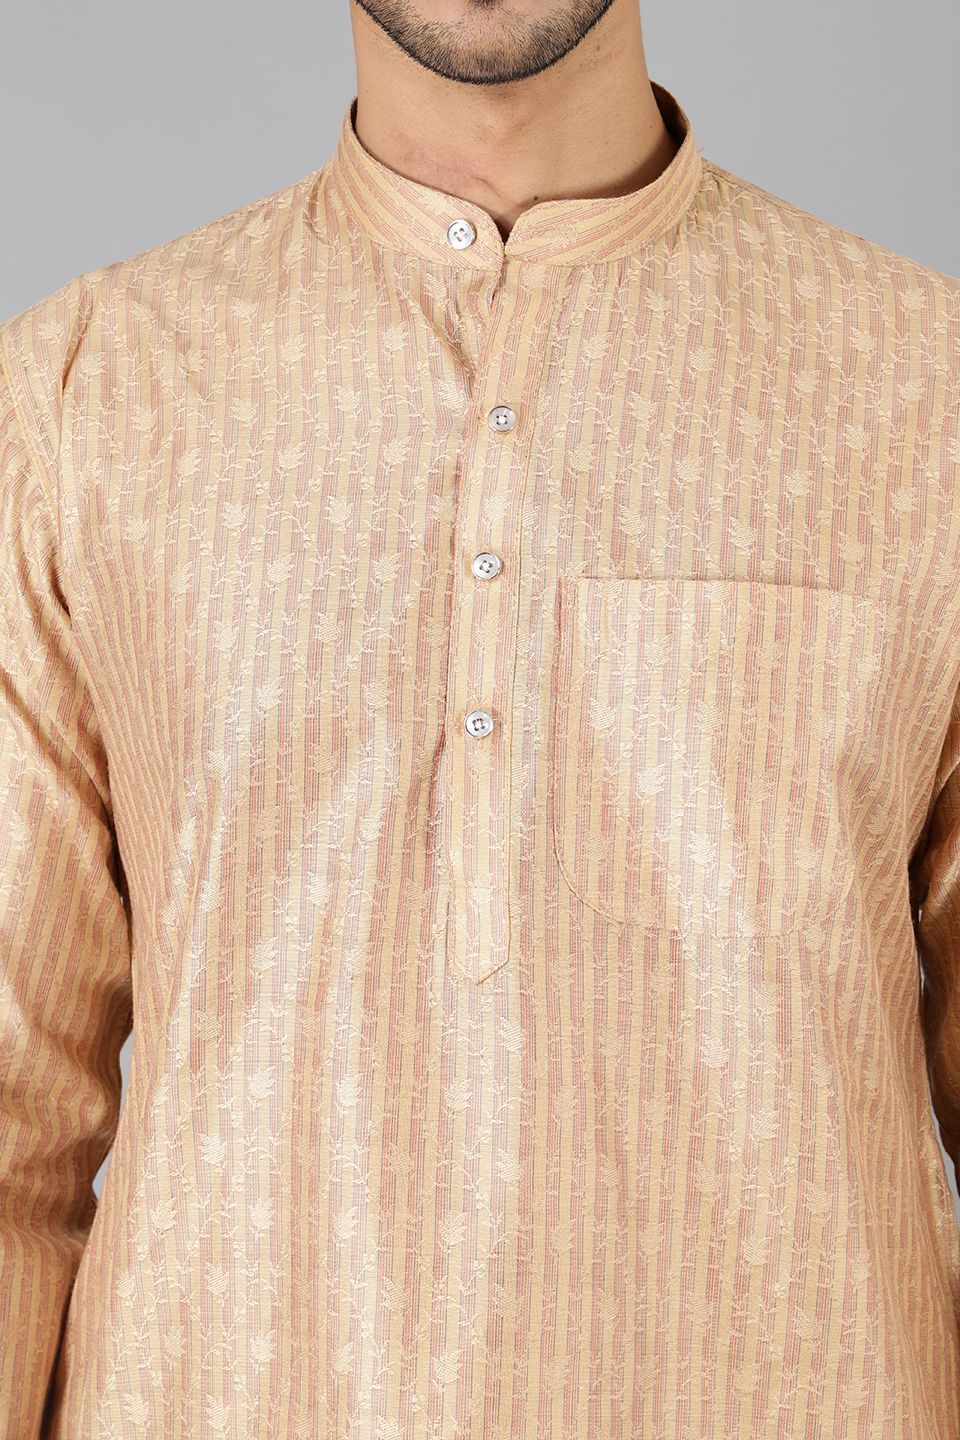 Banarasi Rayon Cotton Gold  Kurta Pajama